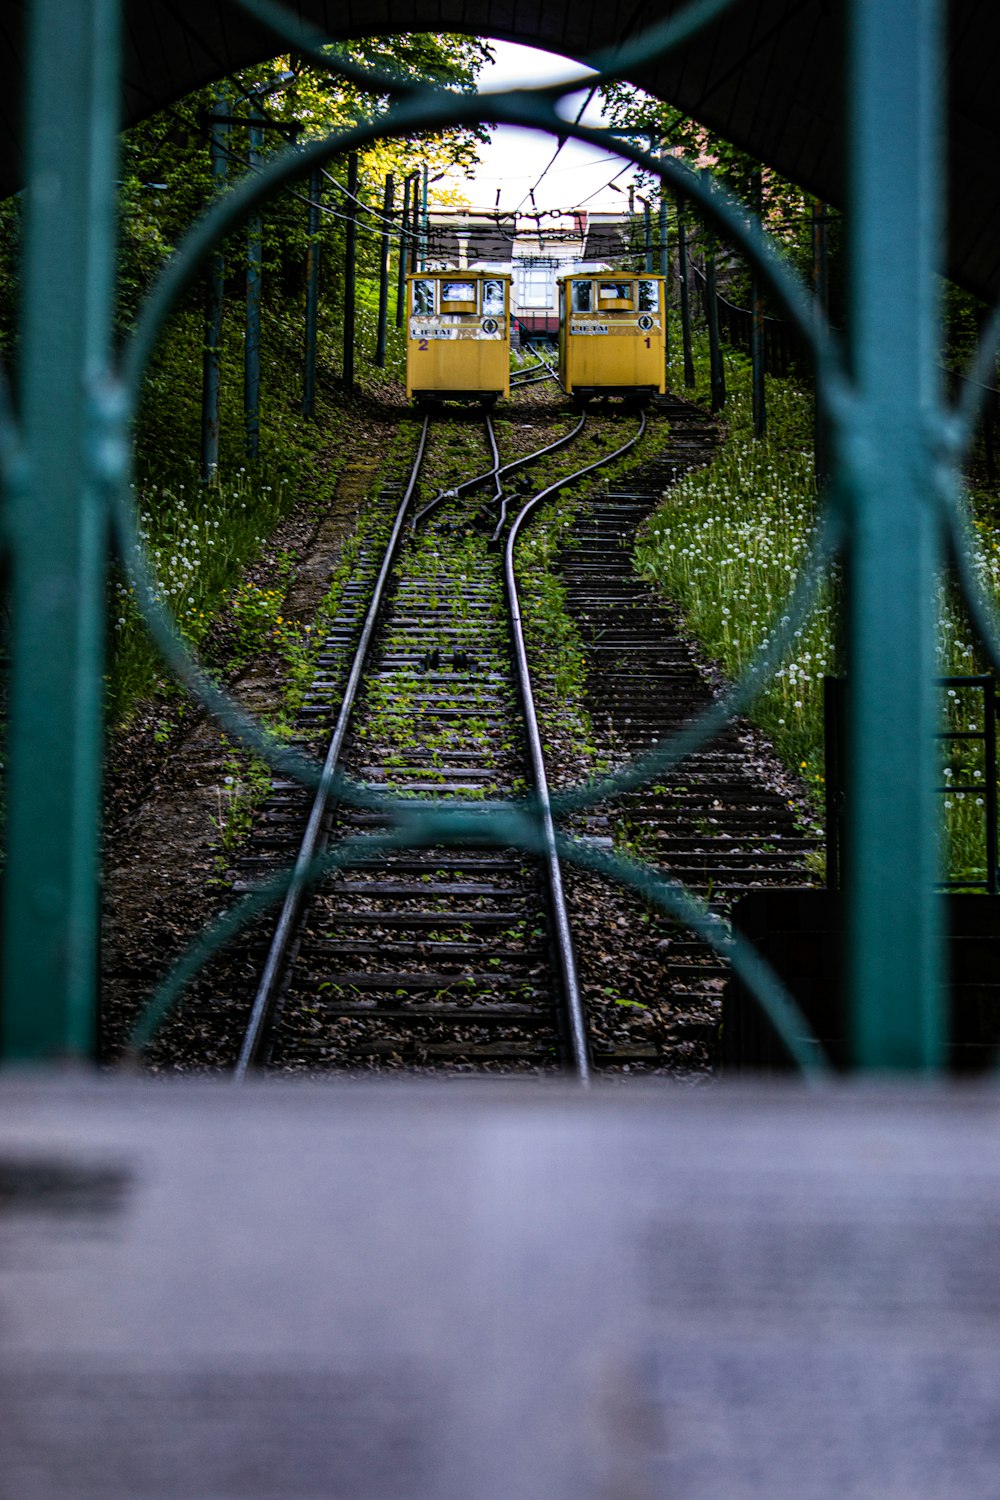 Tren amarillo en las vías del tren